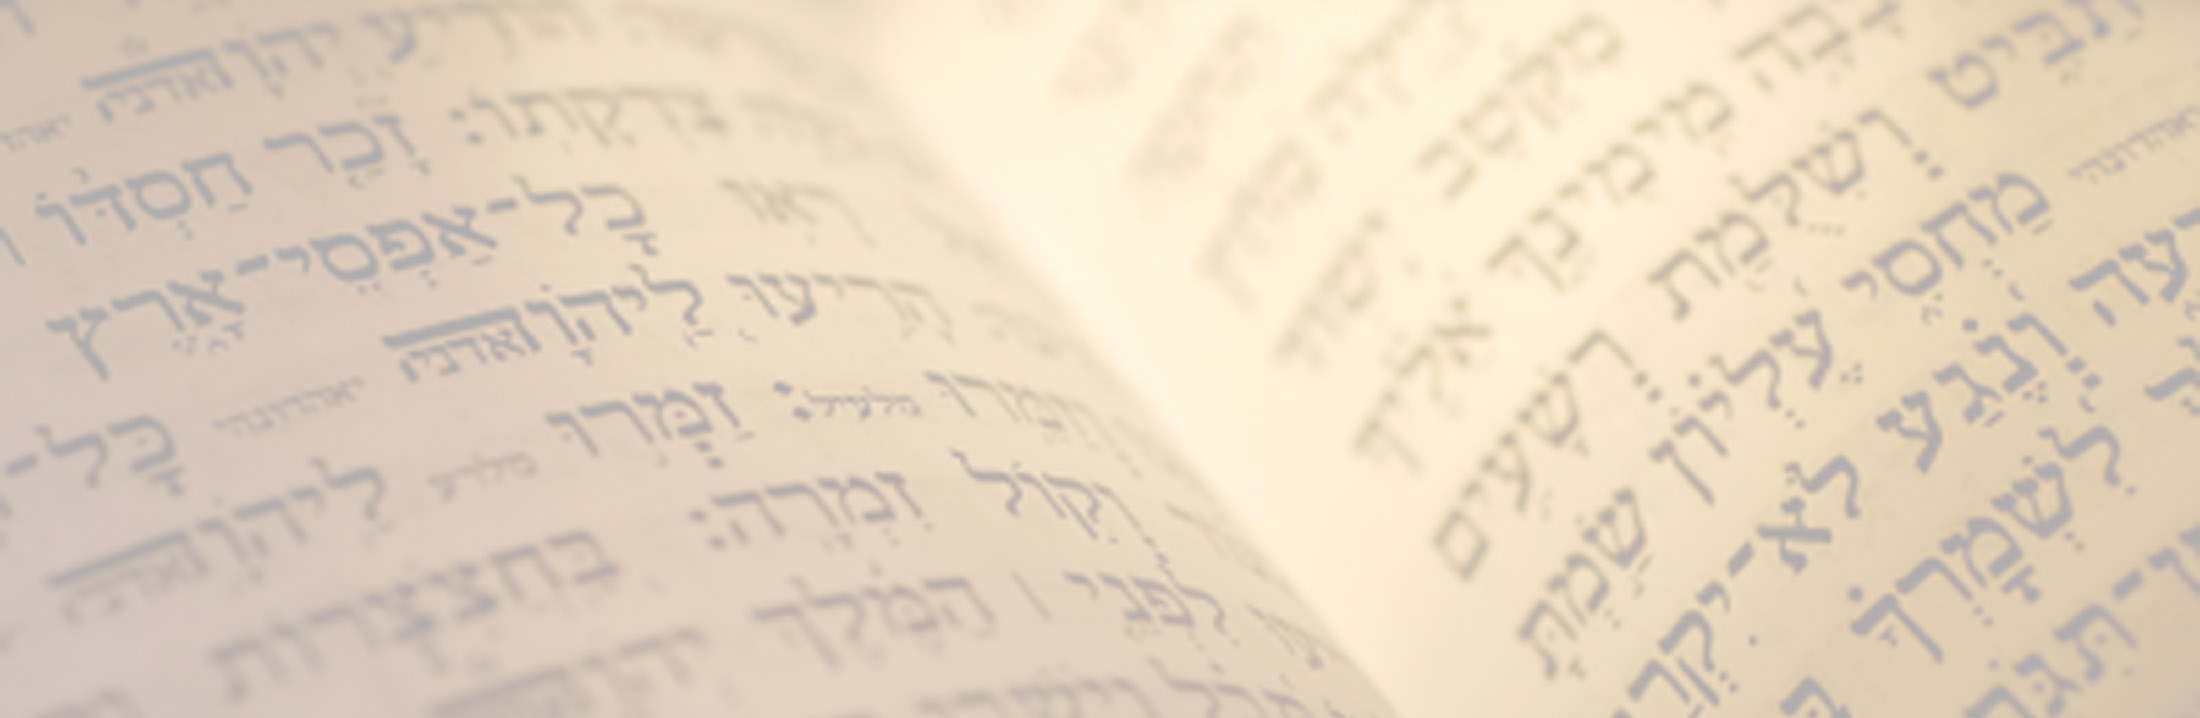 Hebrew scriptures